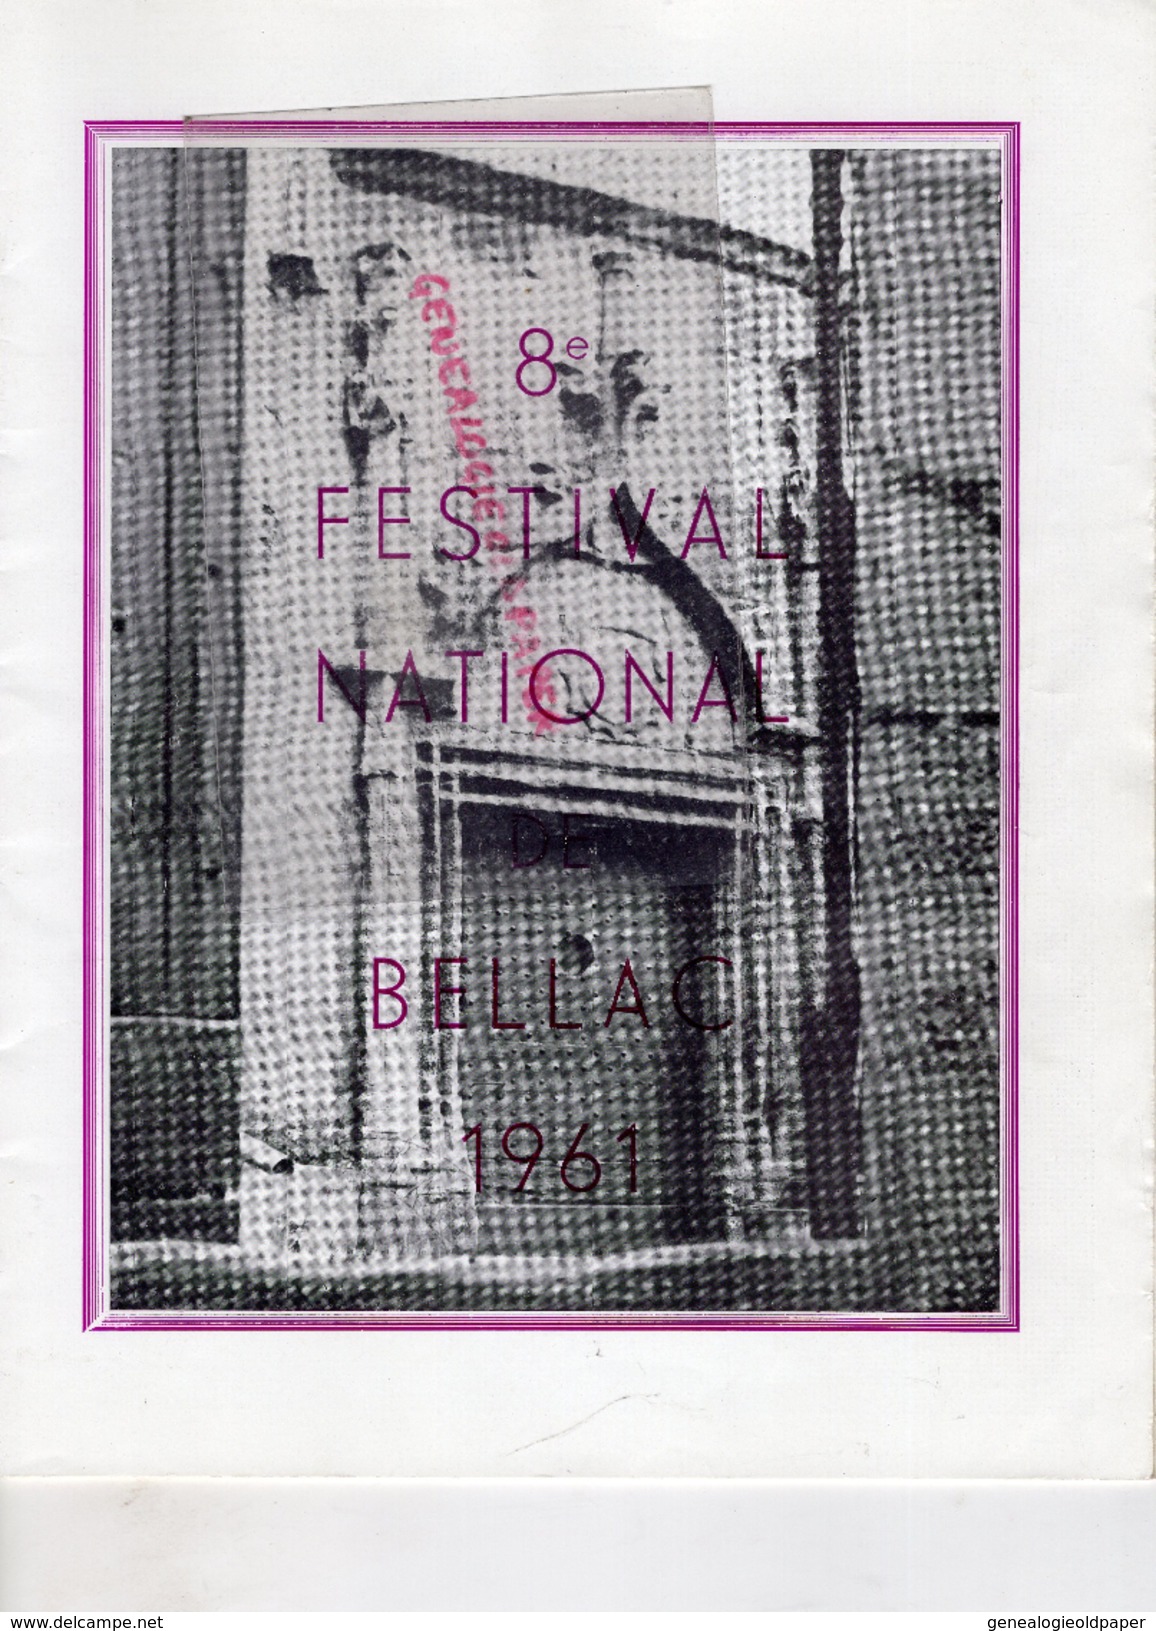 87 -BELLAC -PROGRAMME 8 E FESTIVAL 1961- PAUL KUENTZ-ANDROMAQUE-KNOCK-BARBIER SEVILLE-ANDRE CLUZEAU-LIMOGES ETCHEVERRY- - Programme